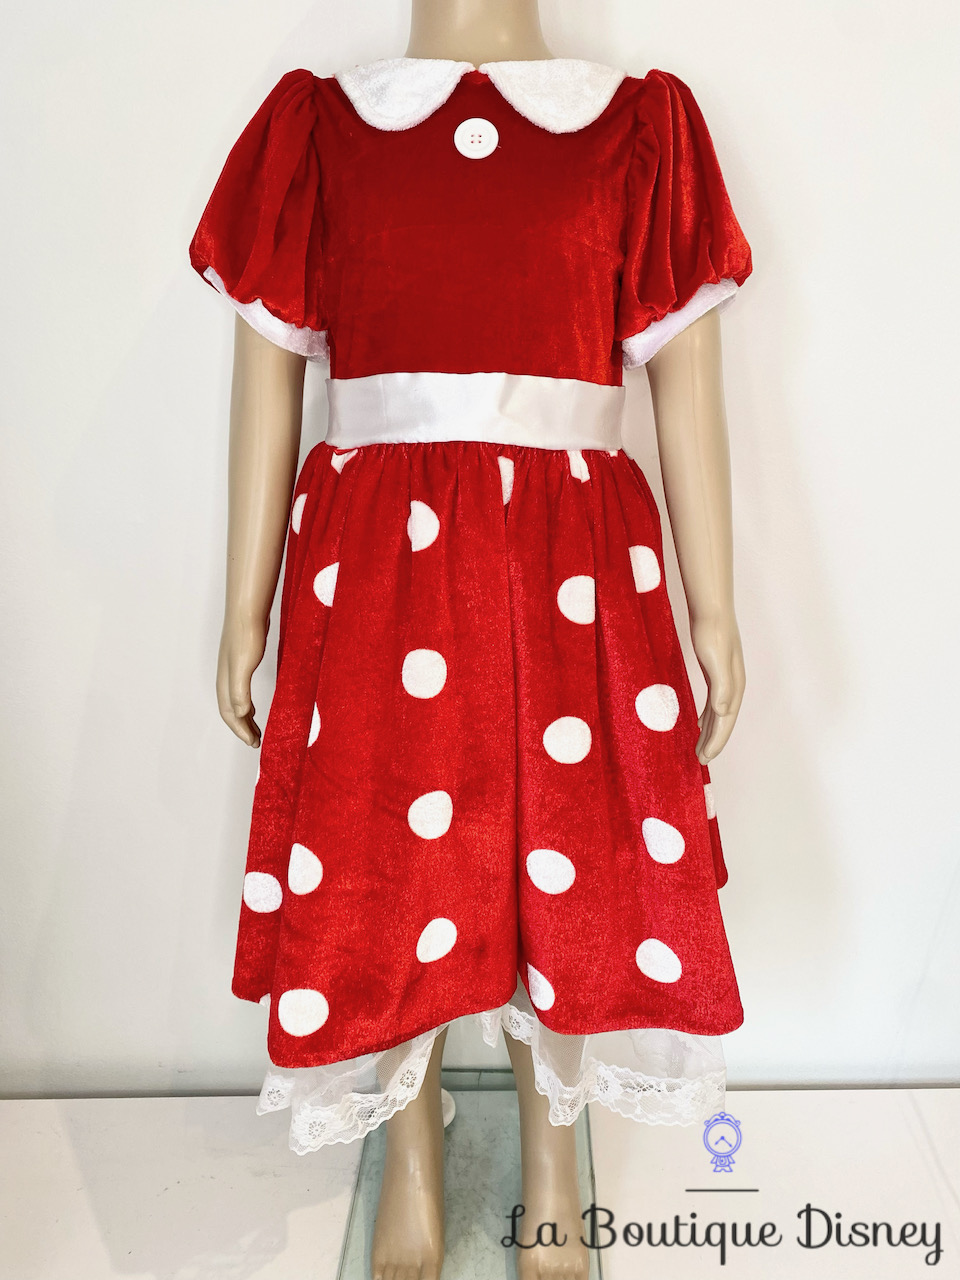 Déguisement Minnie Mouse Disneyland Paris Disney taille 6 ans robe rouge pois